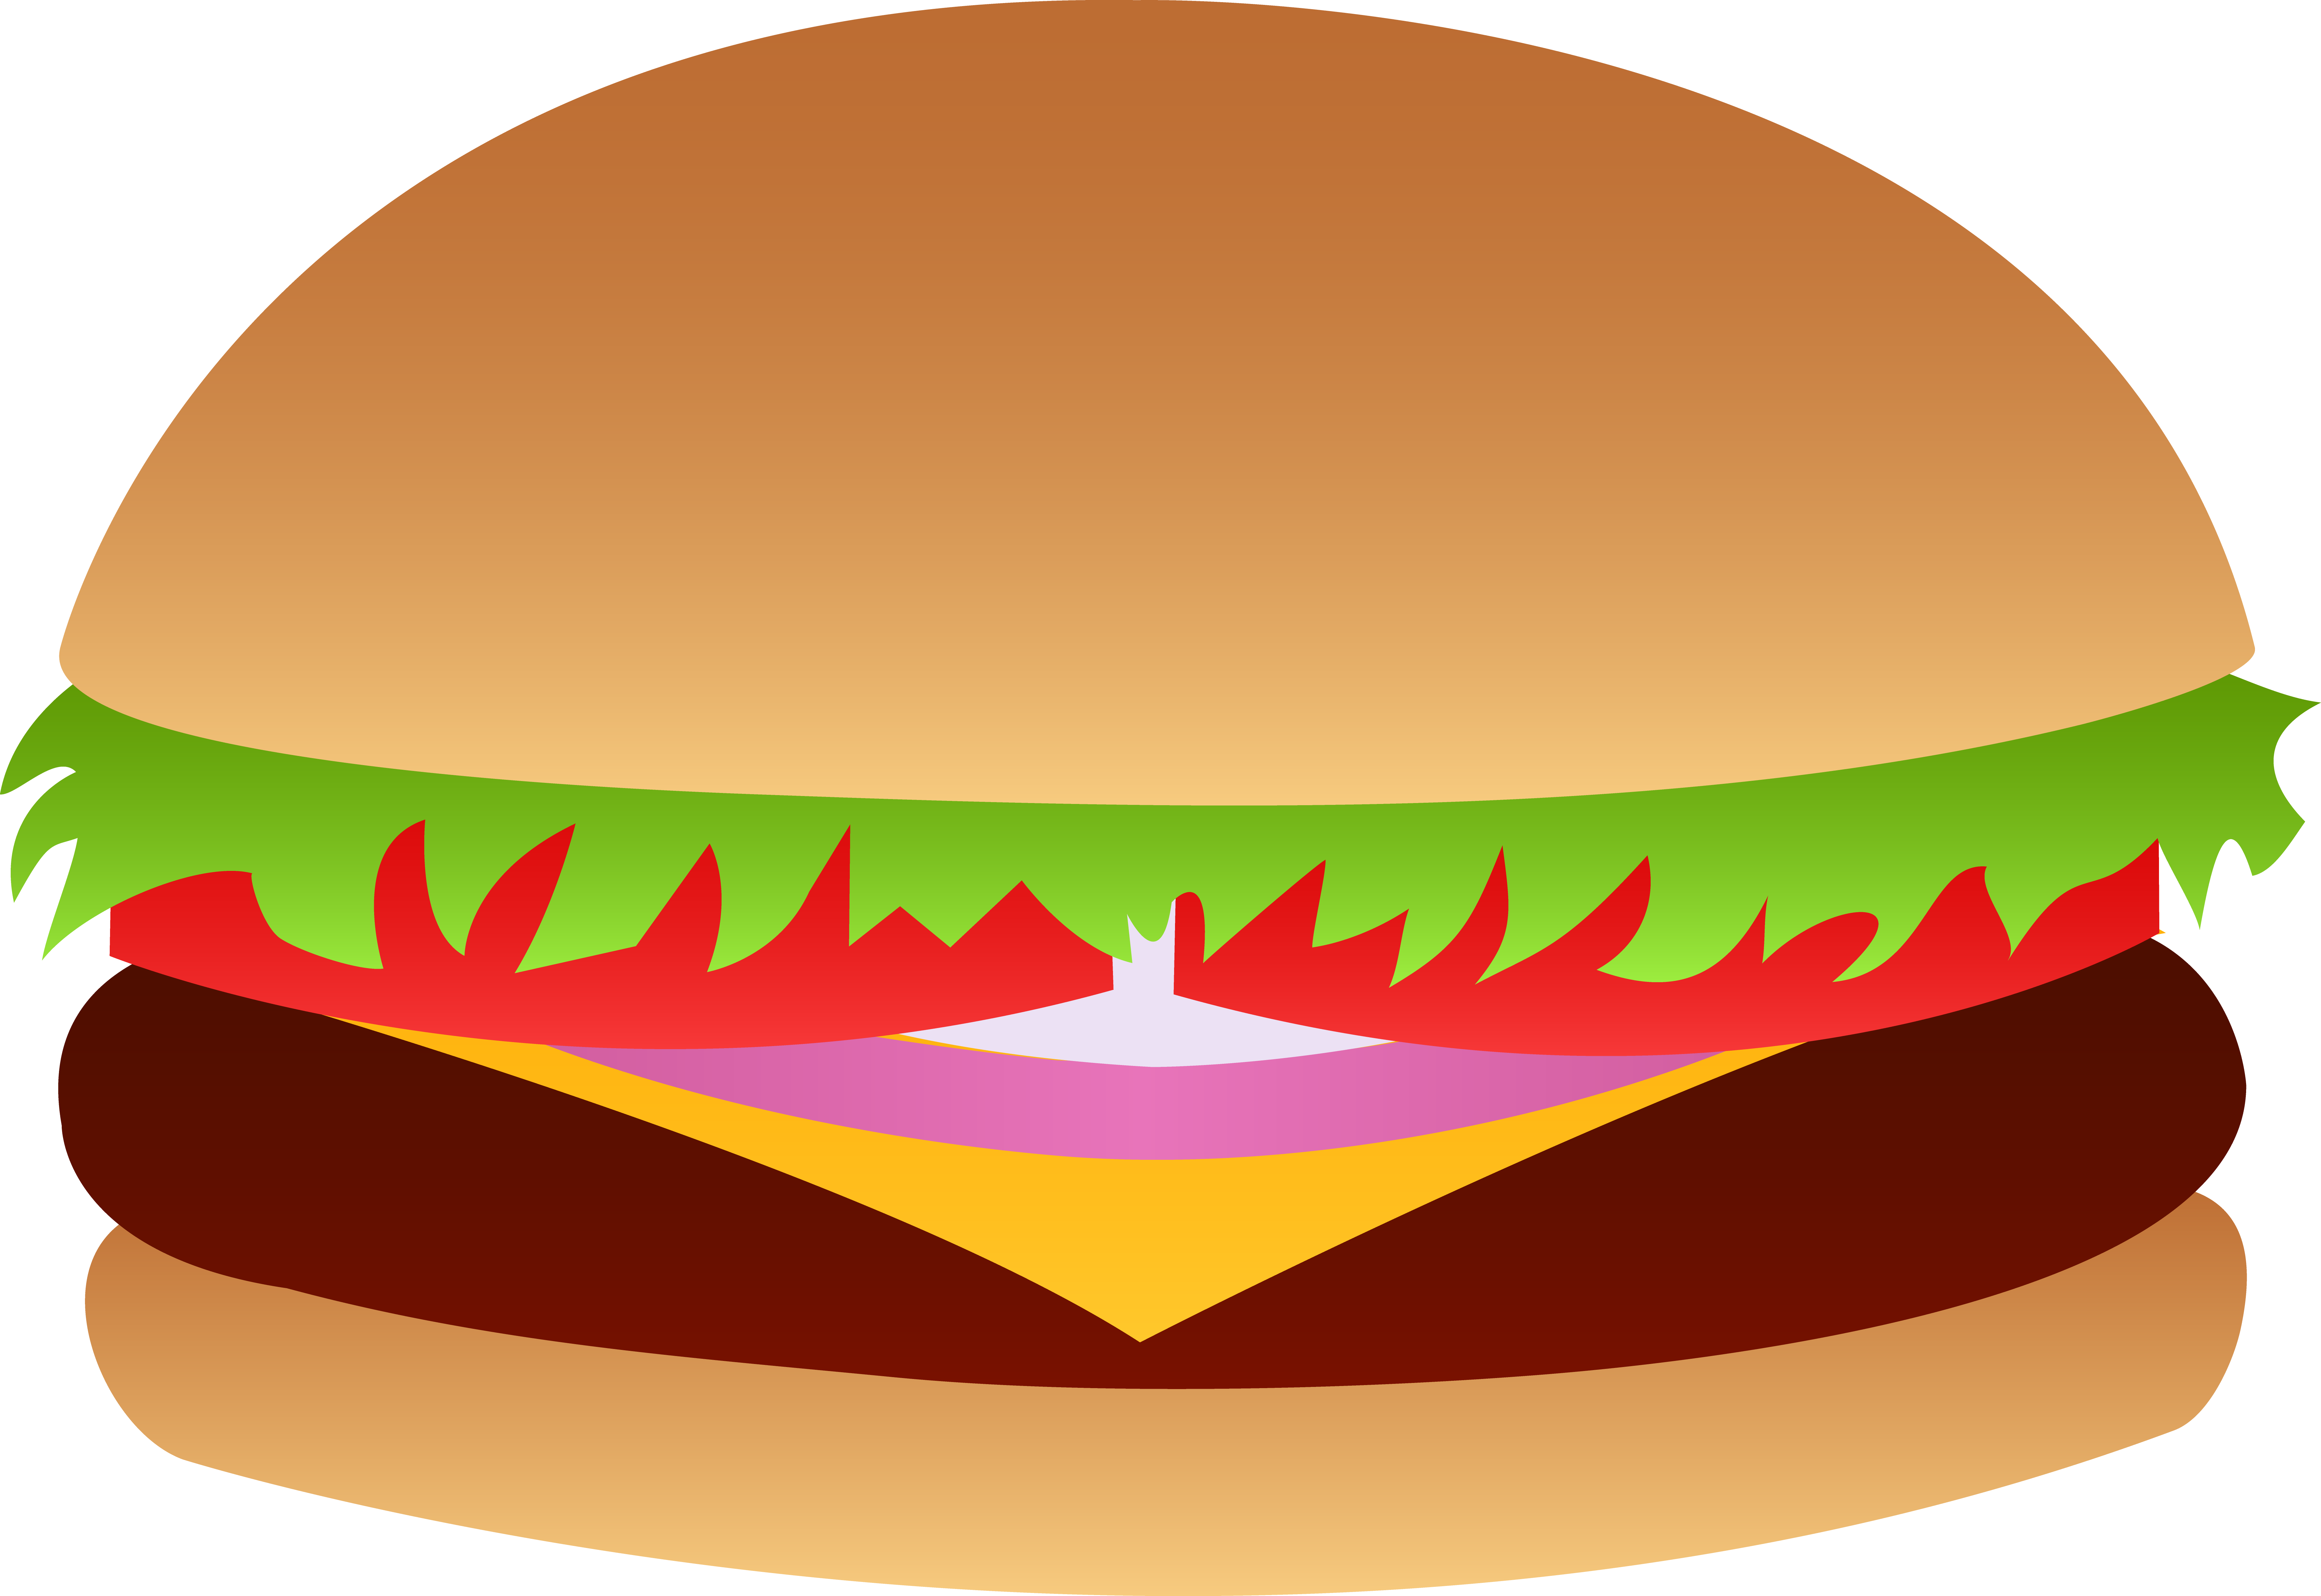 Cheeseburger Vector - Free Clip Art